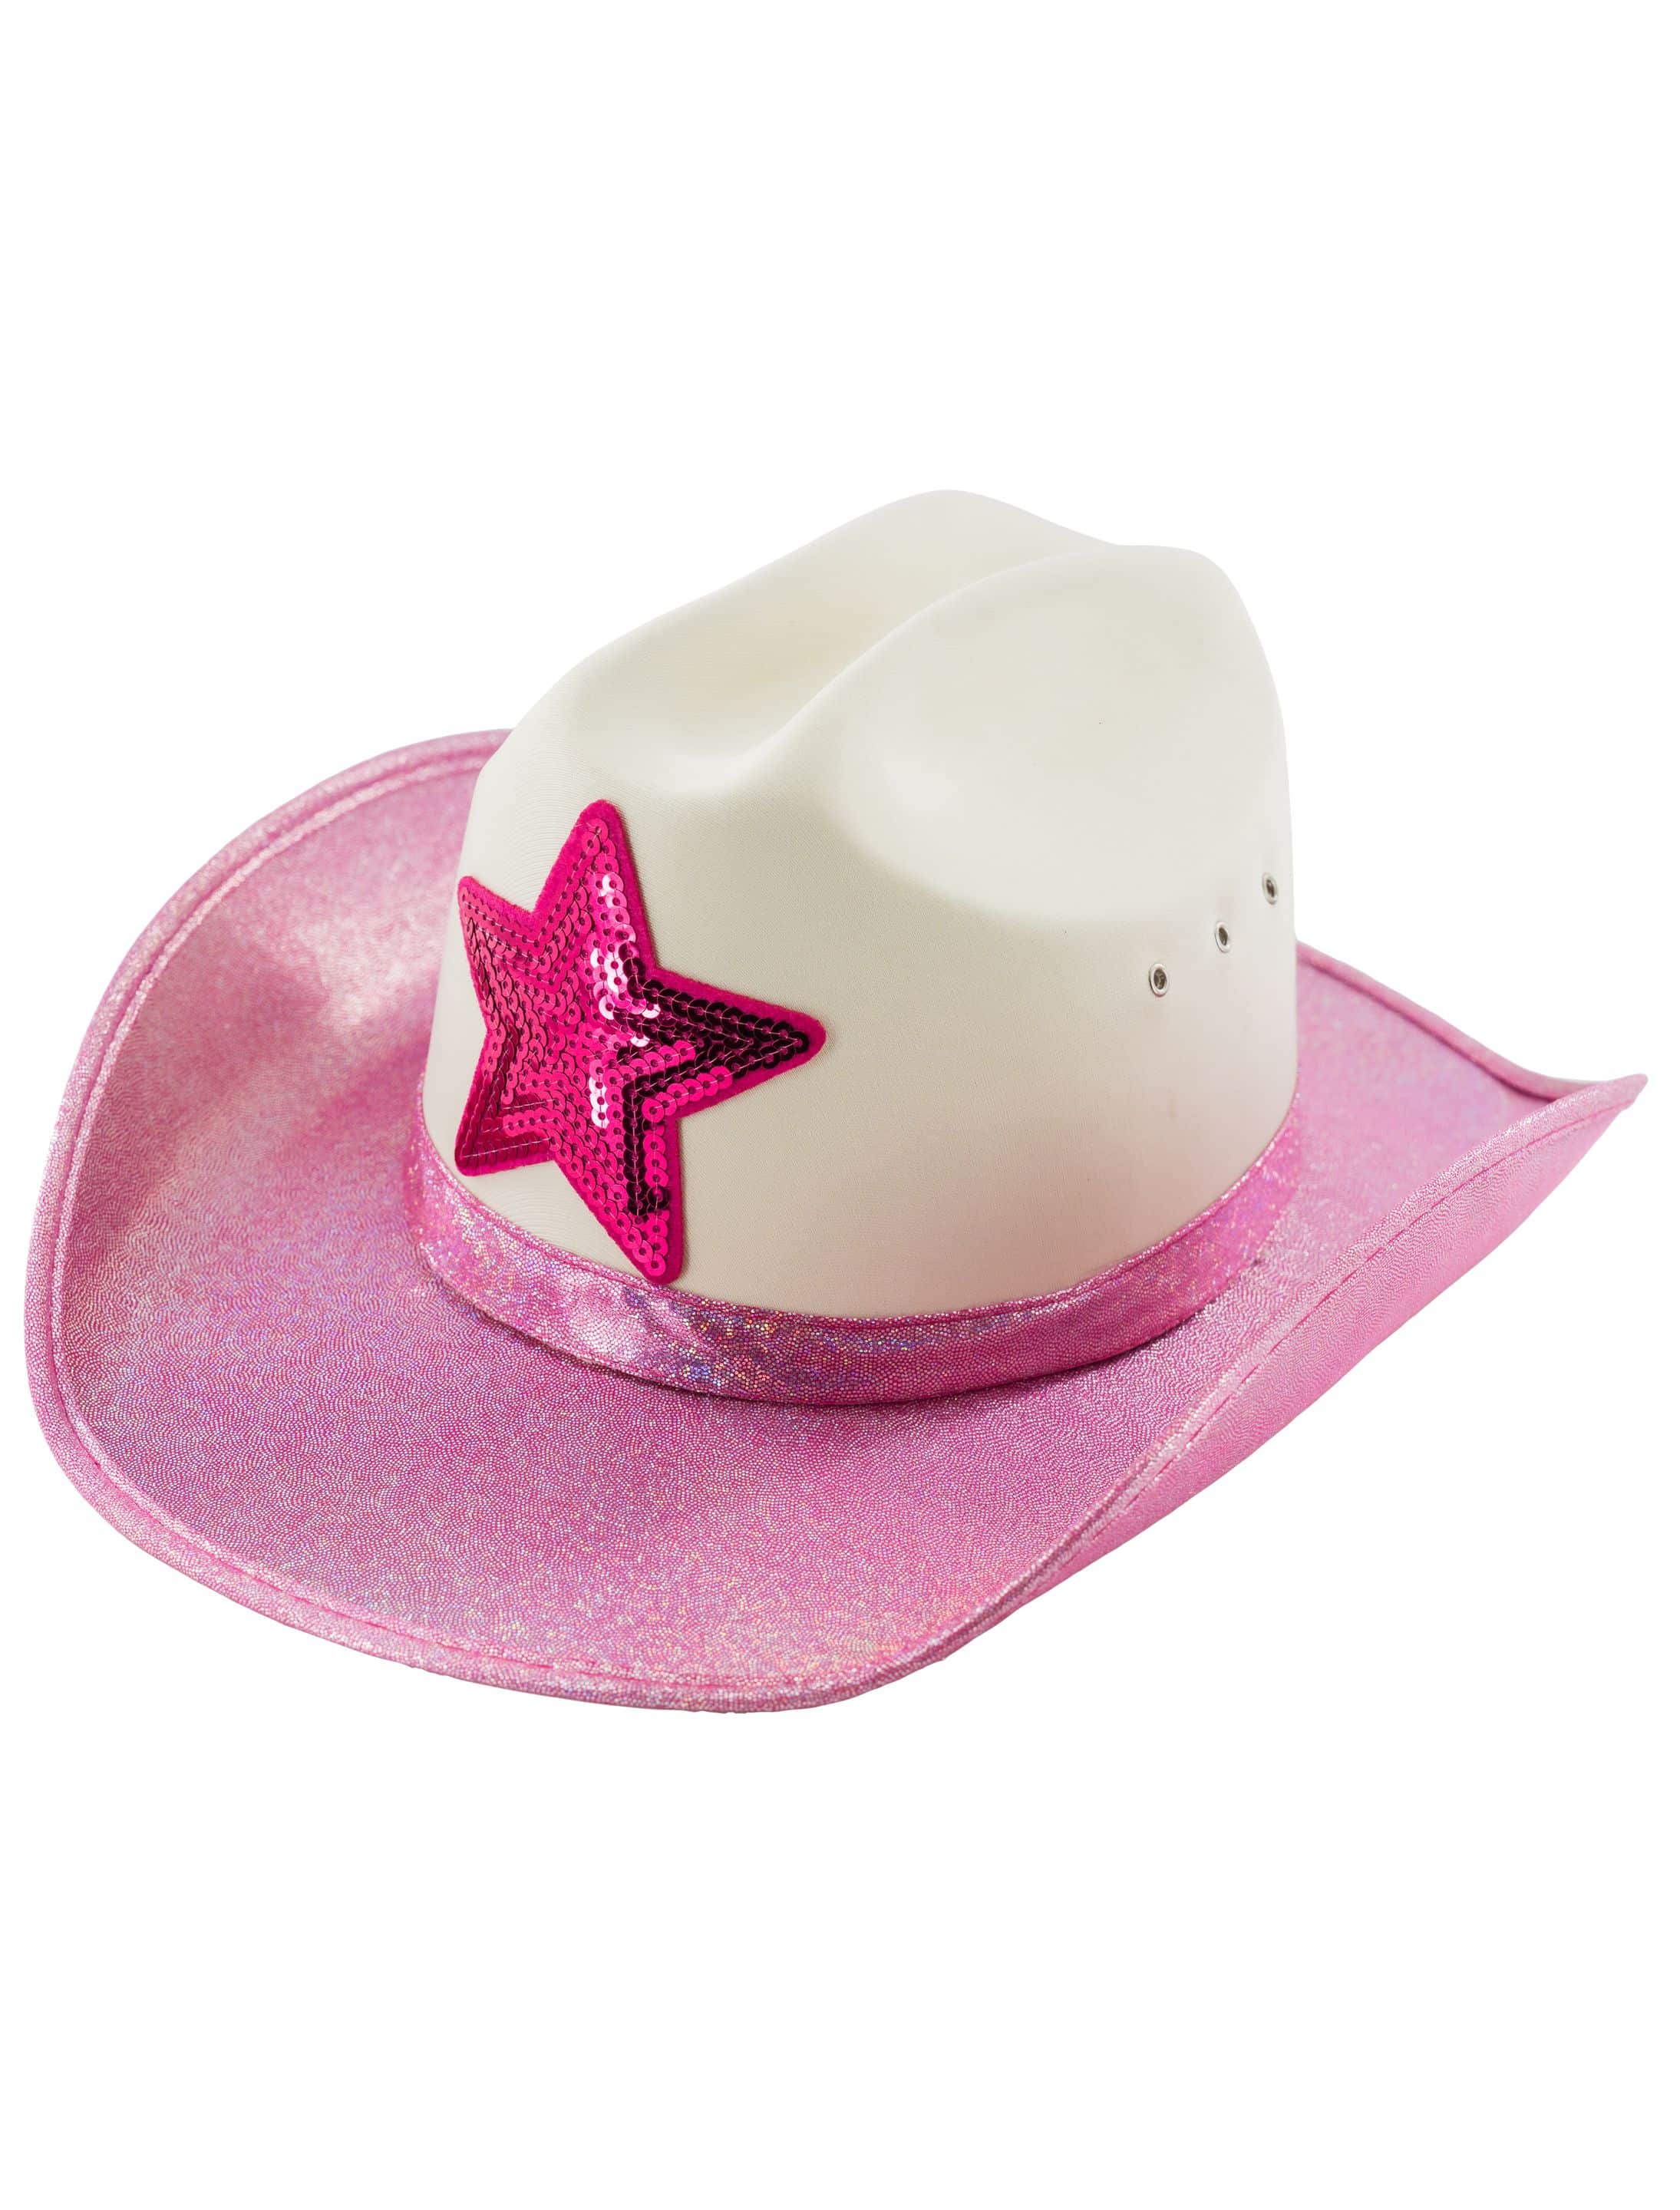 Cowboyhut mit Stern weiß/pink one size